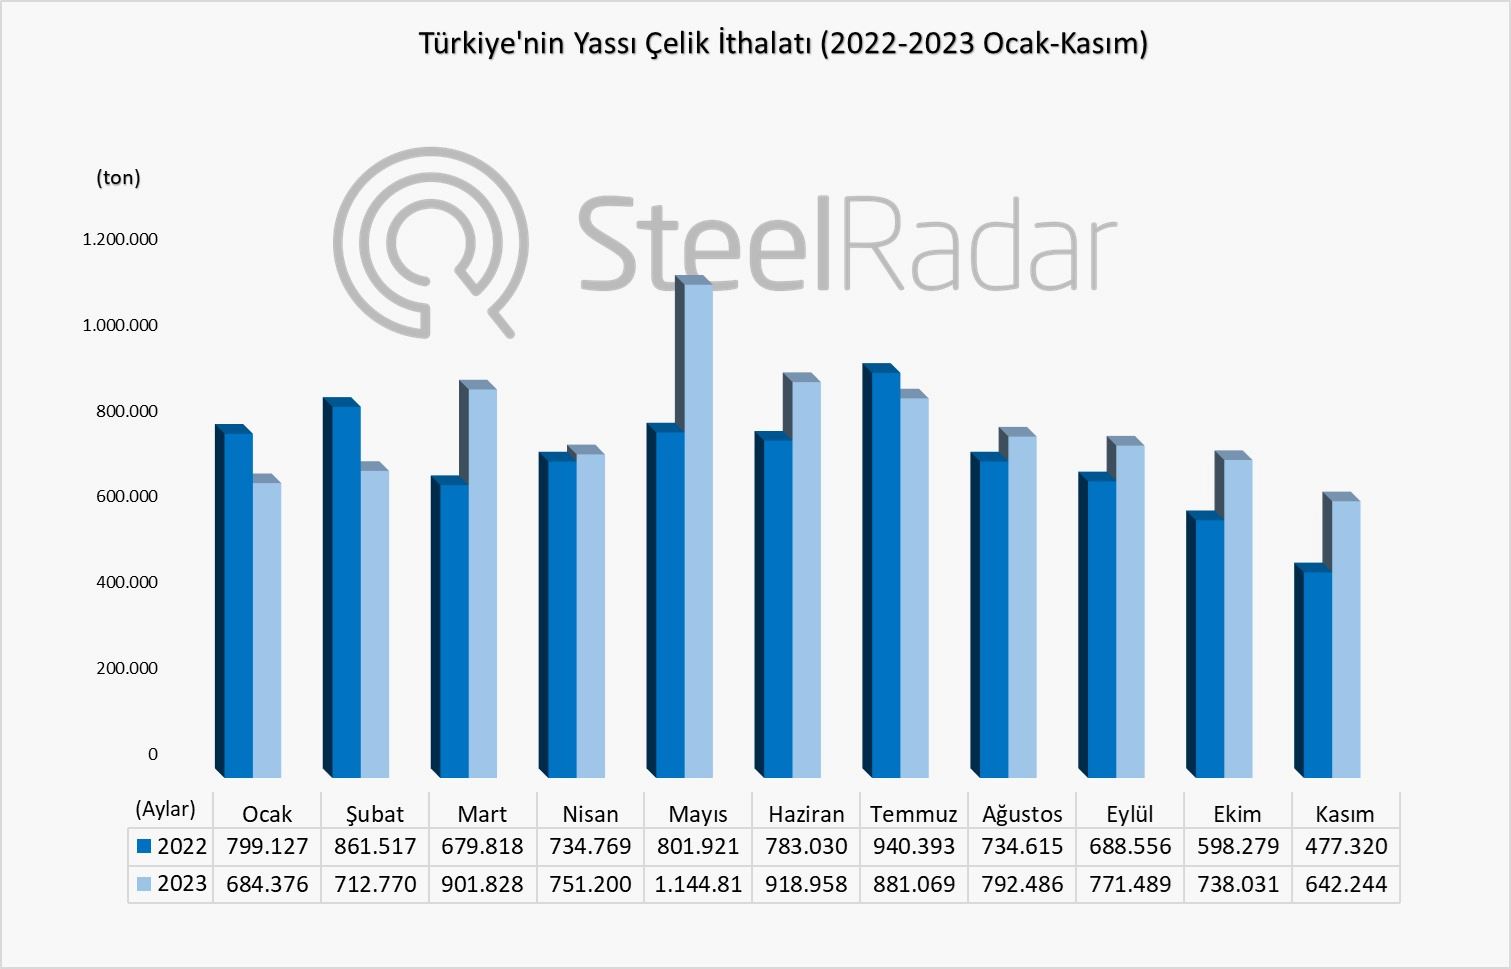 Türkiye'nin yassı çelik ithalatı kasım ayında %34,56 artış gösterirken, yıllık en düşük ithalat görüldü